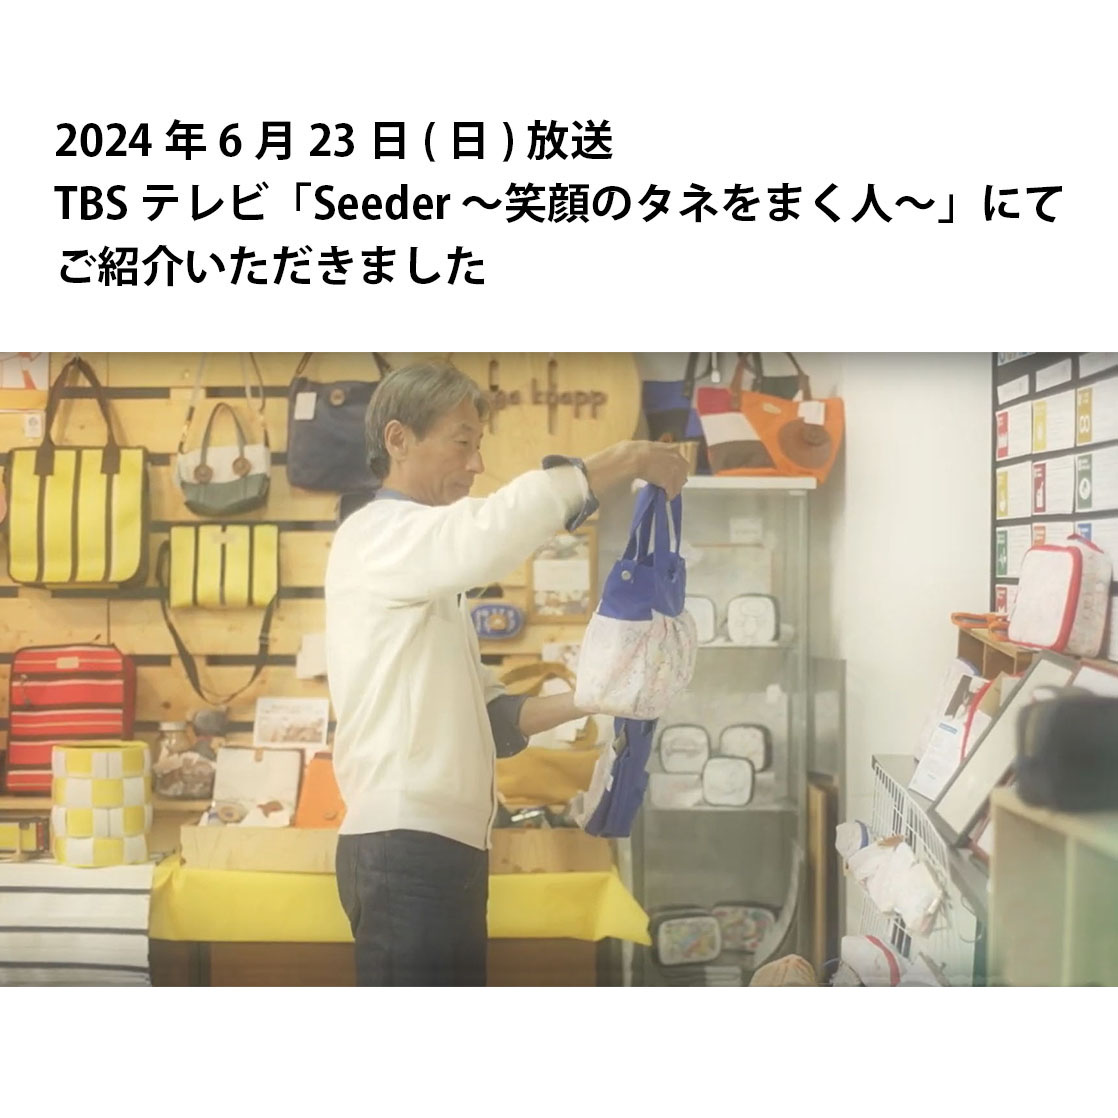 TBSテレビ「Seeder 〜笑顔のタネをまく人〜」